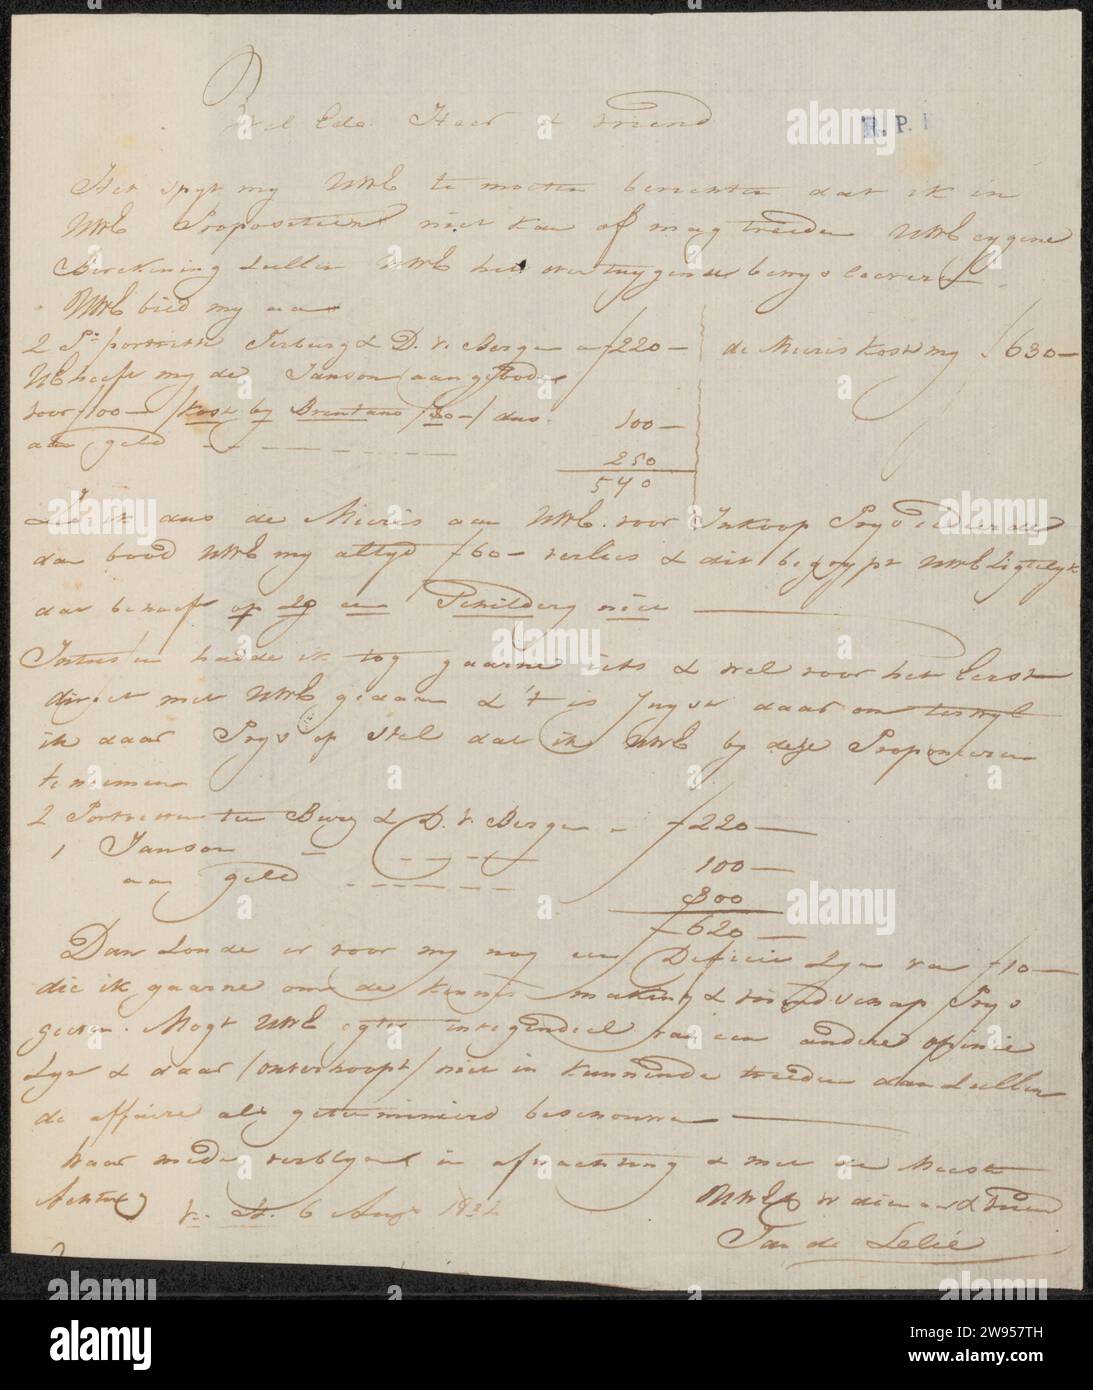 Lettre à Anonymous, Jan Adriaan Antonie de Lelie, 1832 papier à lettres. écriture à l'encre (procédés) / peinture à la plume (y compris l'illumination de livre, la peinture miniature). commerce d'art, boutique d'art. argent. personne historique anonyme représentée Banque D'Images